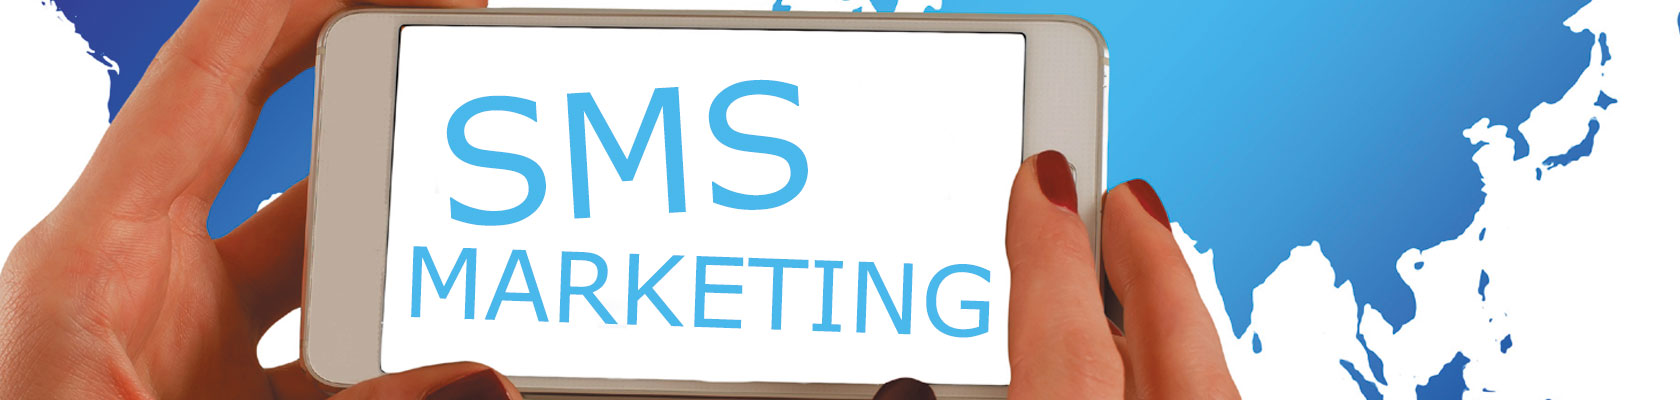 SMS Marketing - Raggiungi i tuoi clienti facilmente in un click